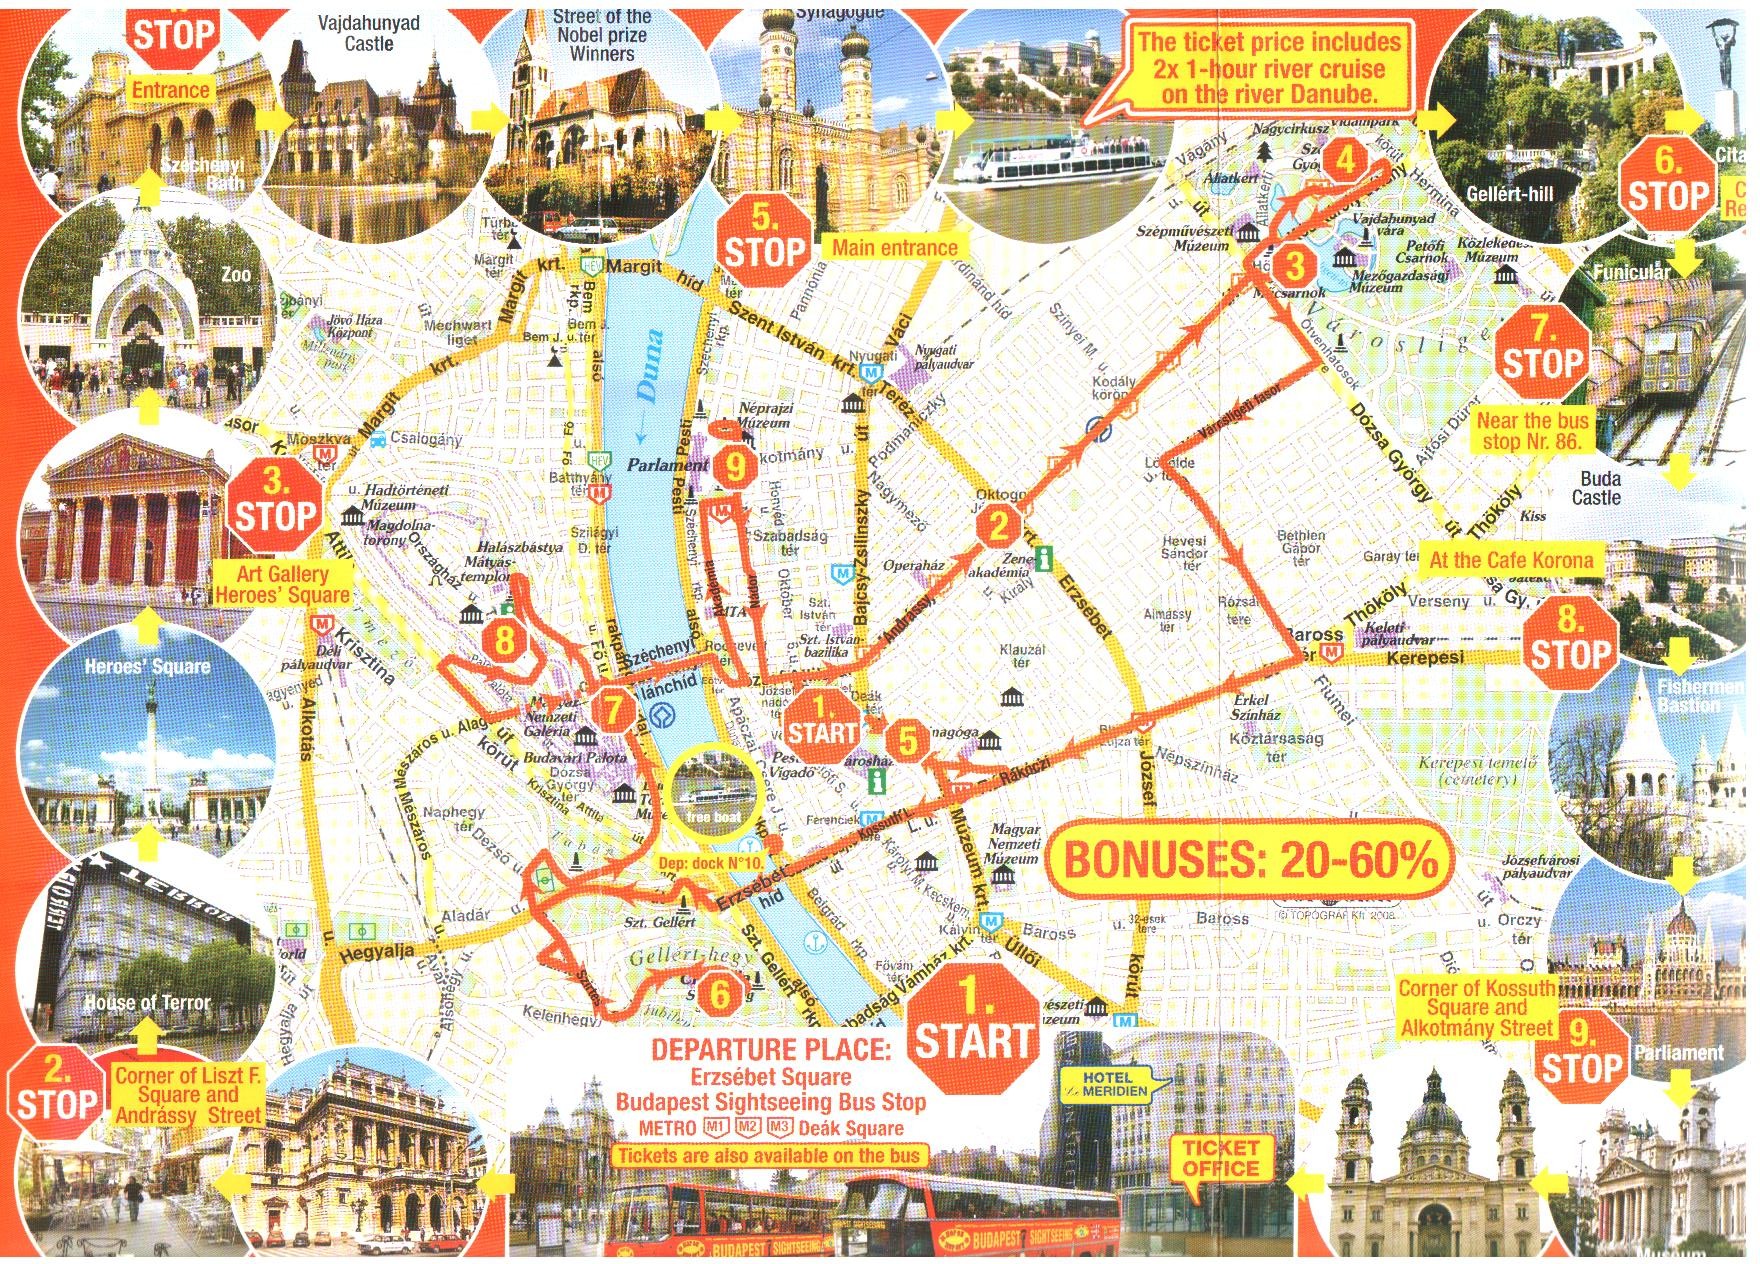 budapest látványosságai térkép Magyarország idegenforgalmi régiói budapest látványosságai térkép